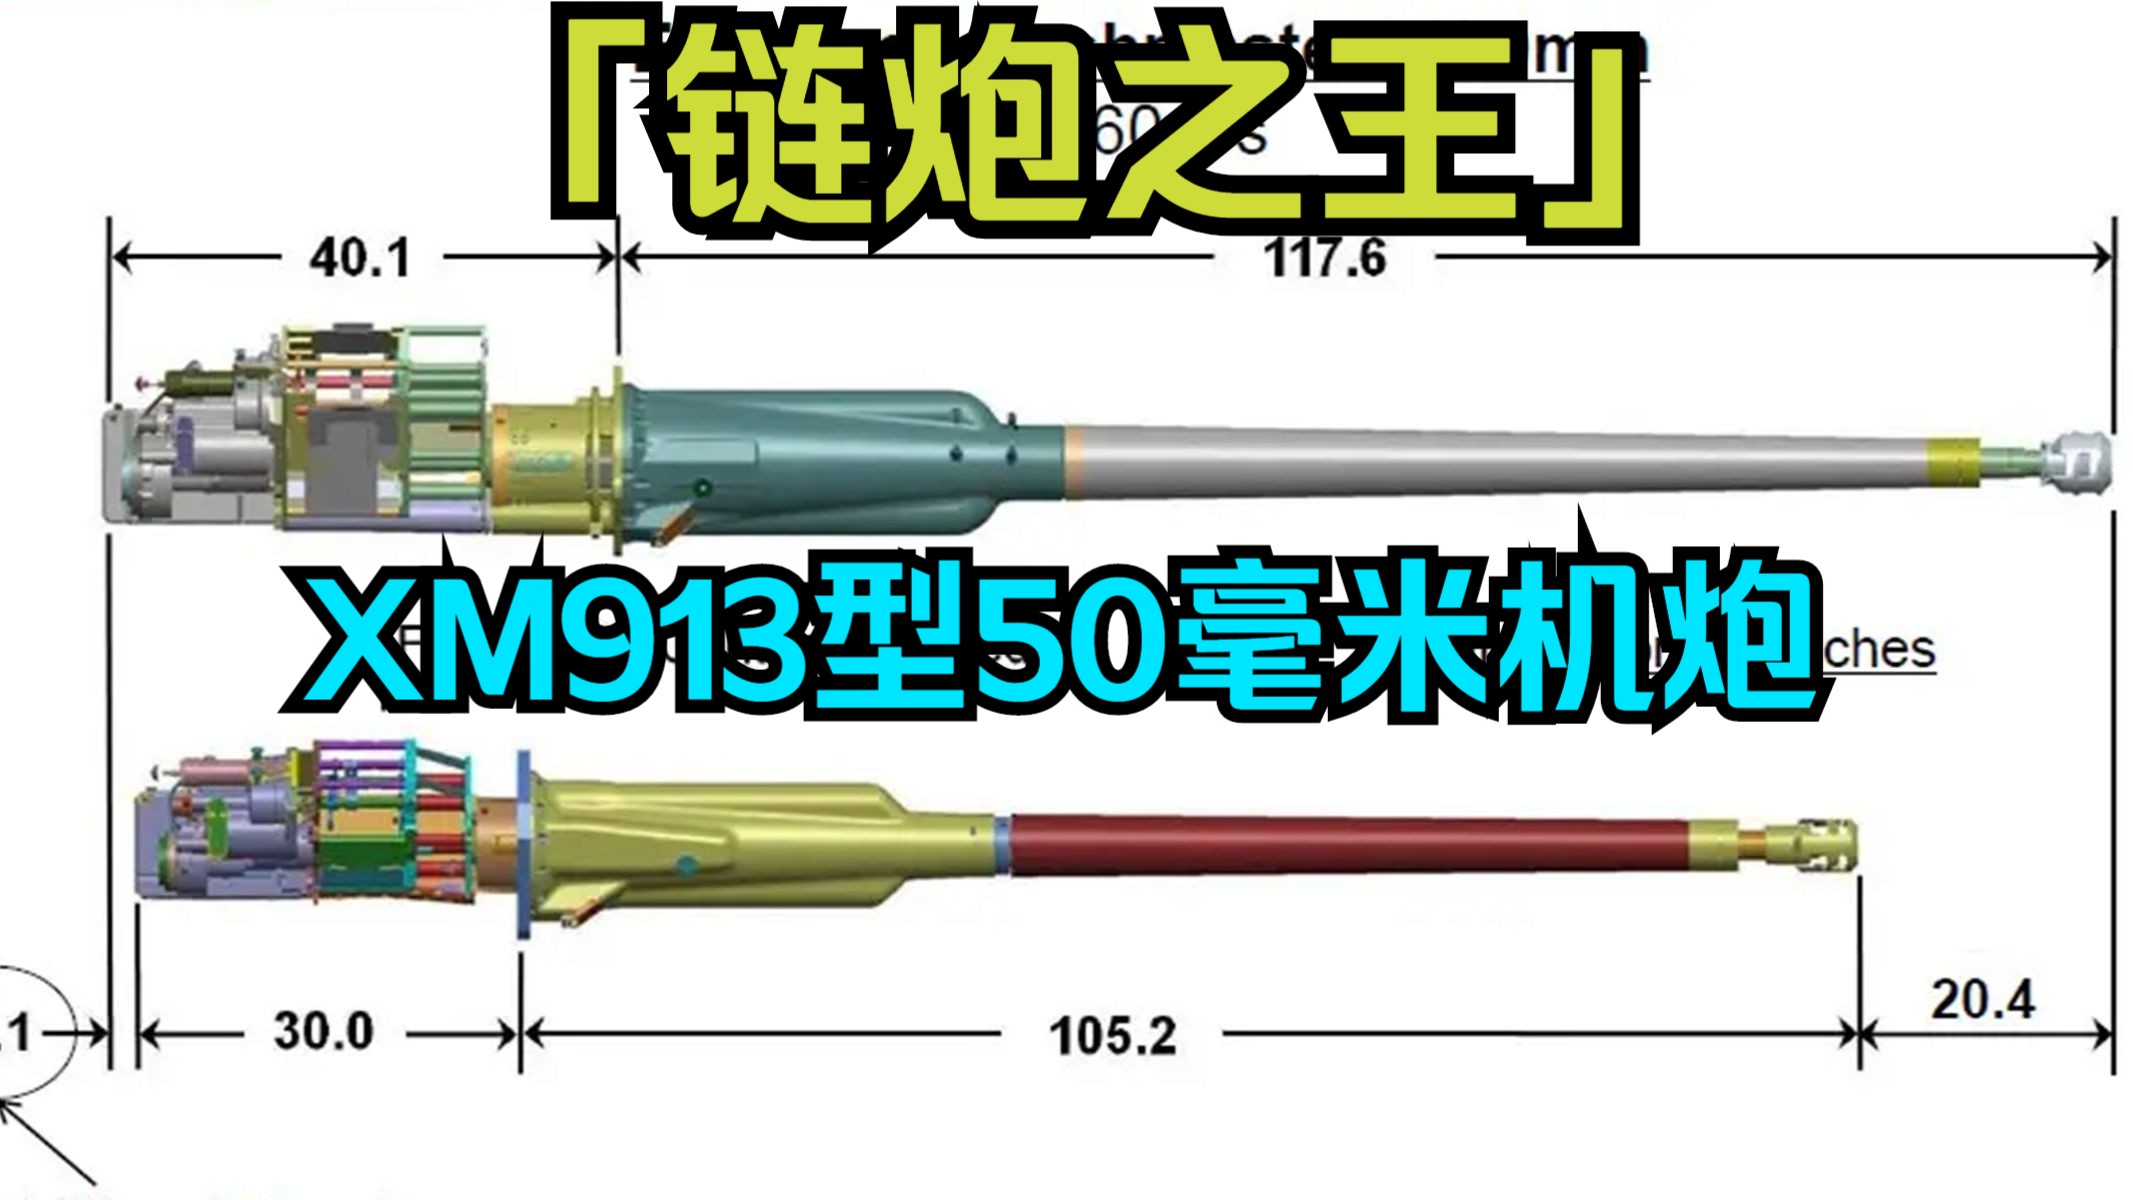 【全中文】链炮之王-XM913型50毫米机炮及未来趋势